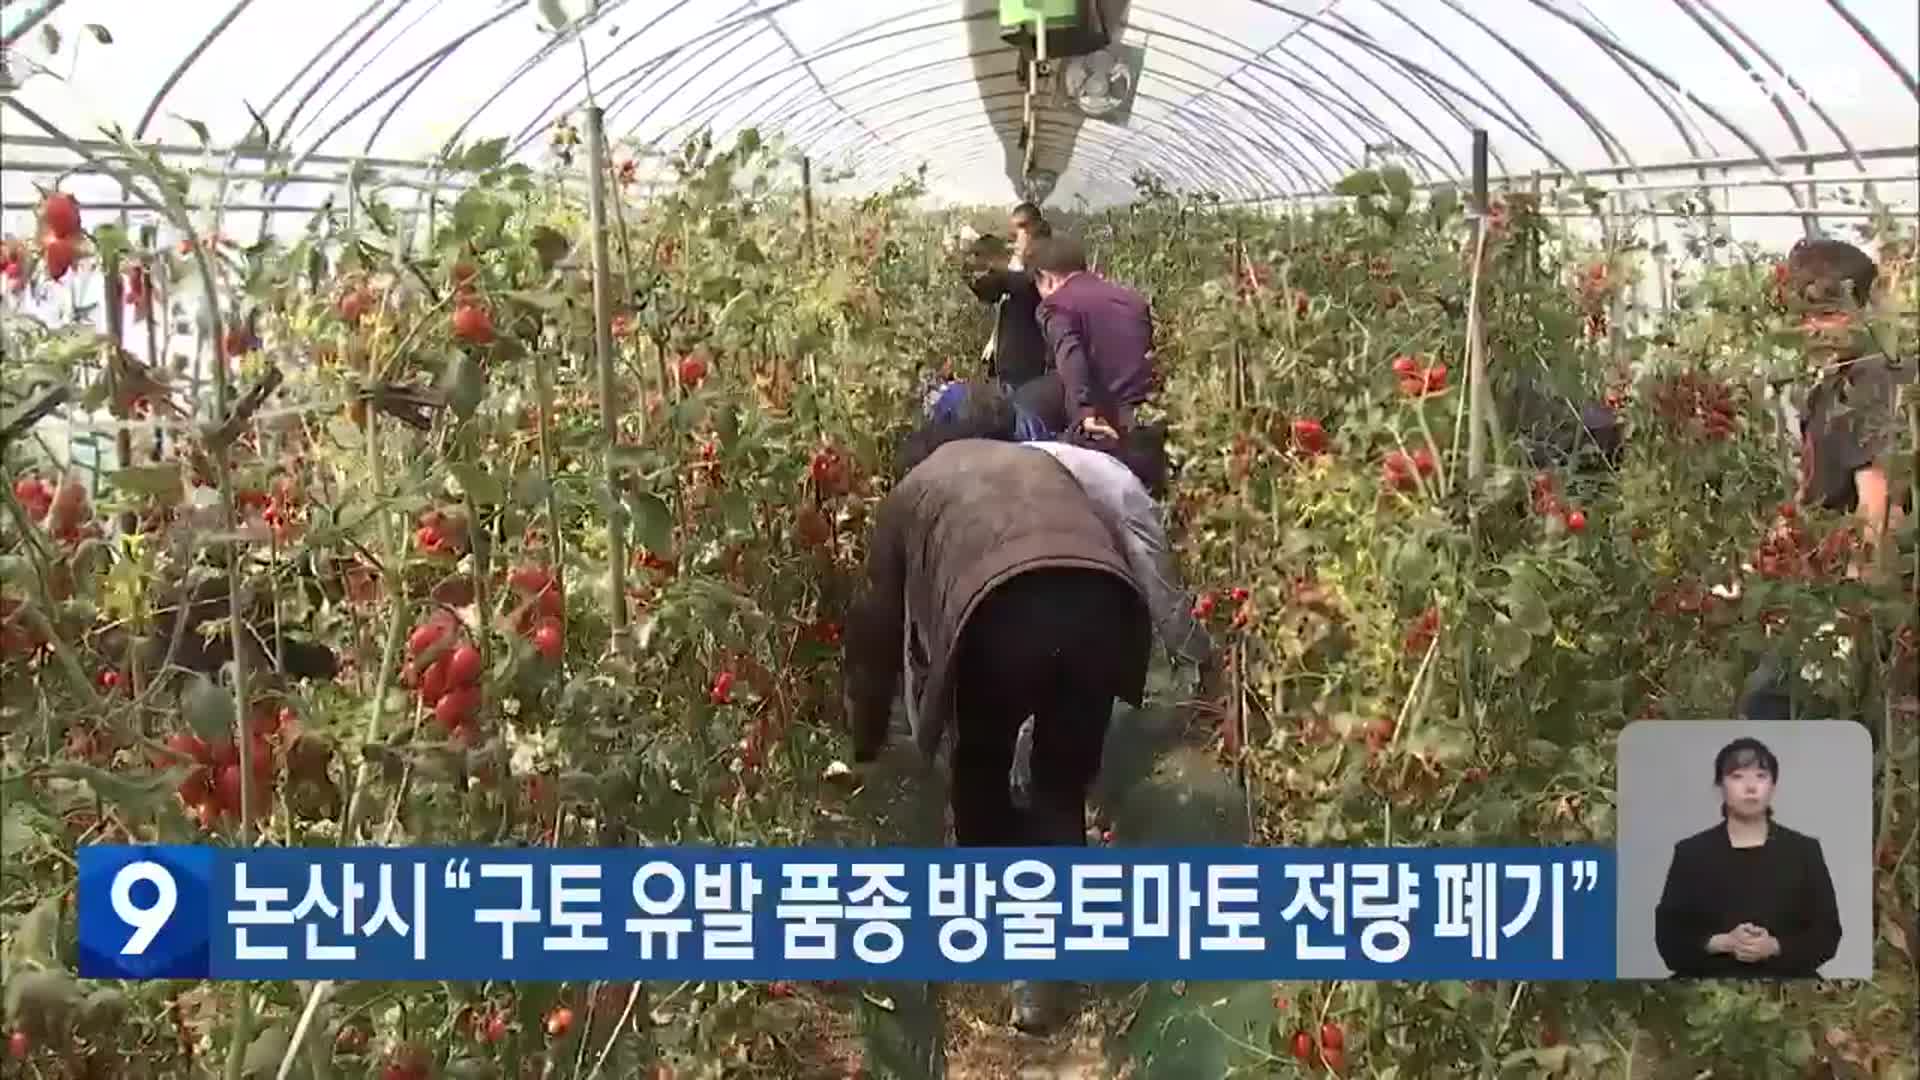 논산시 “구토 유발 품종 방울토마토 전량 폐기”